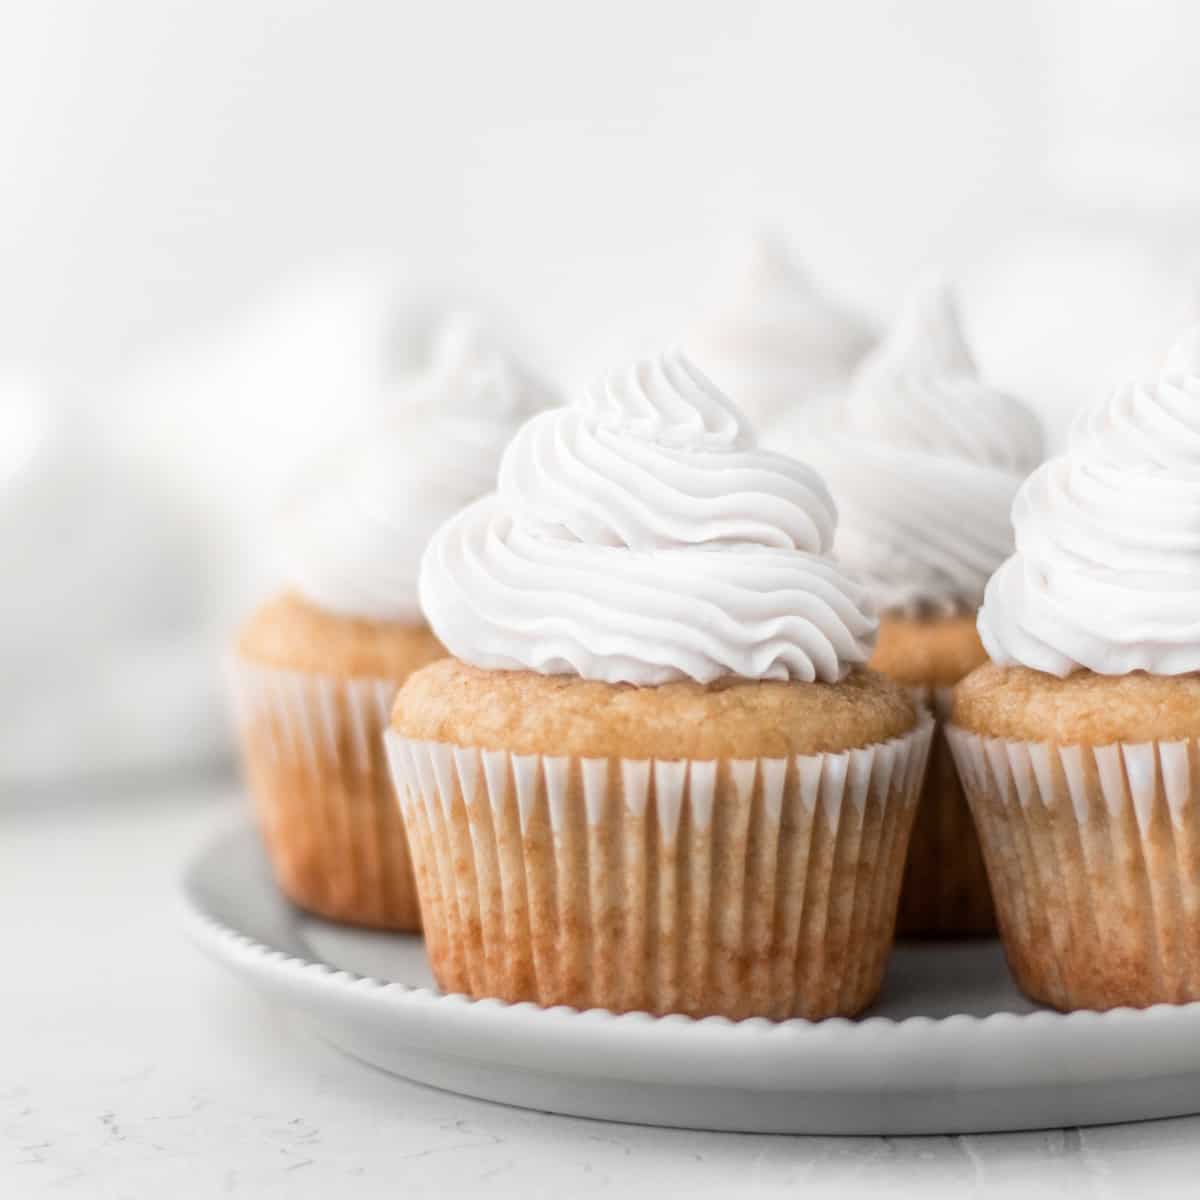 https://veganhuggs.com/wp-content/uploads/2020/10/vegan-vanilla-cupcakes-cropped-square.jpg